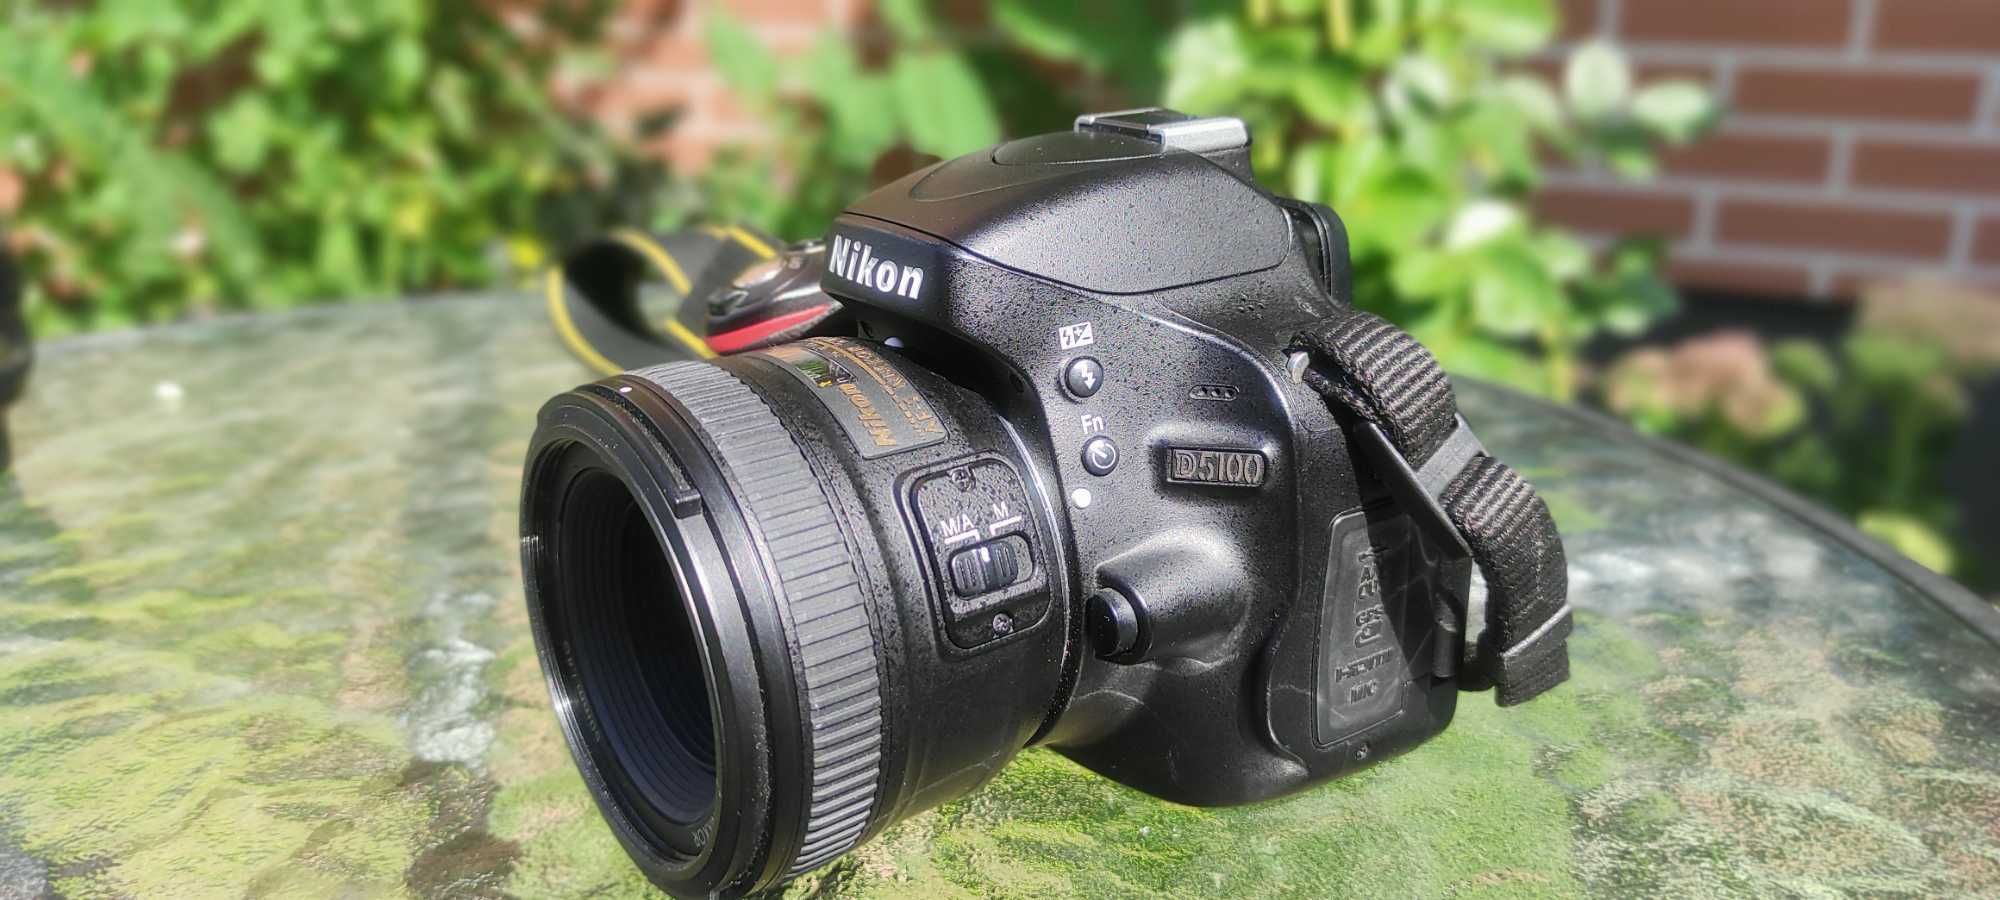 Zestaw Nikon d5100 + Nikkor 50mm + Nikkor 18-55mm + plecak + filtr